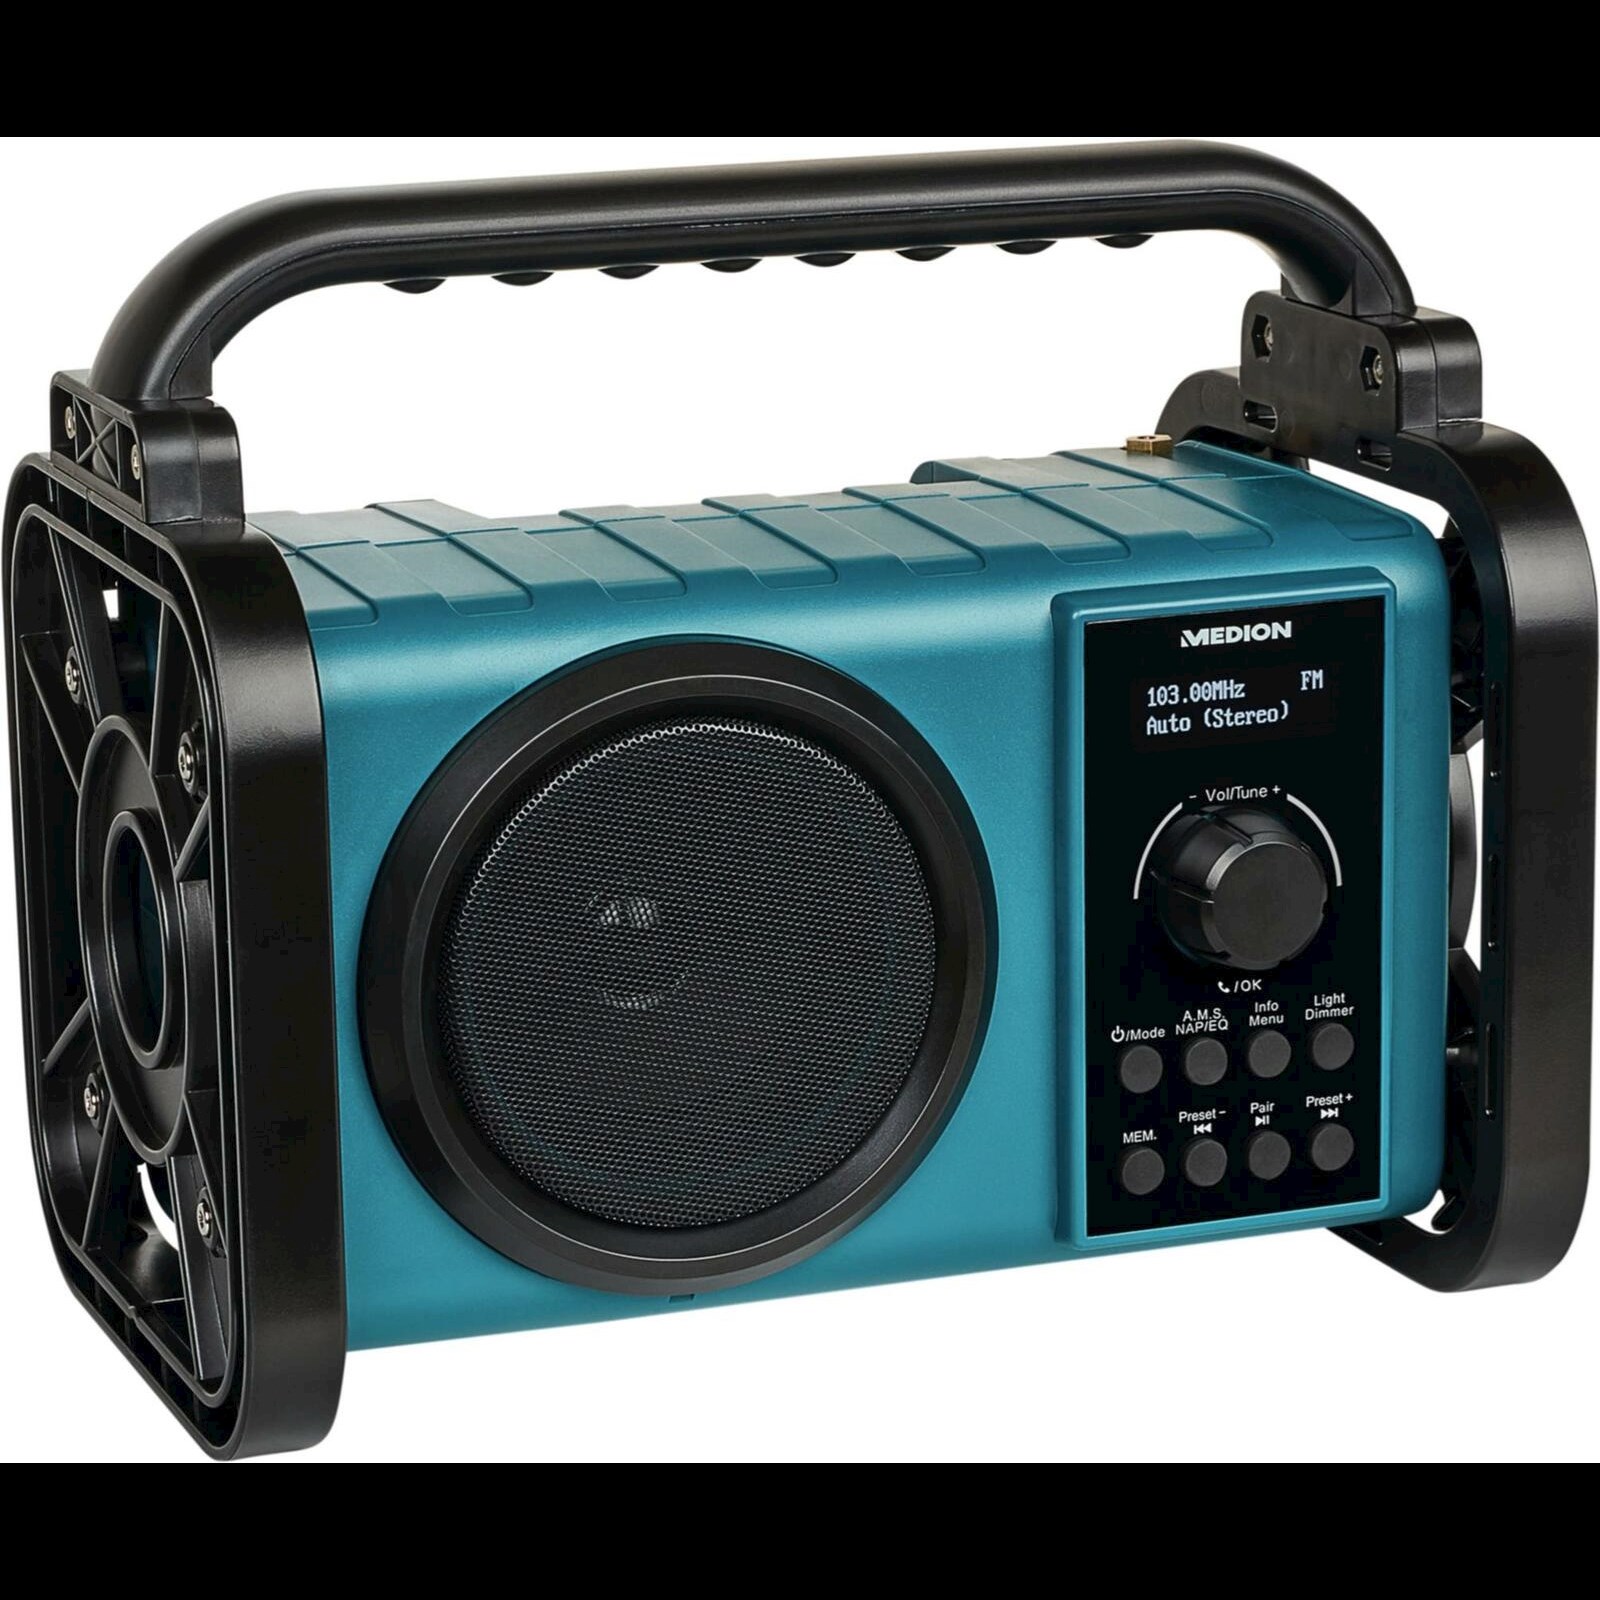 Boîte de Radio numérique DAB + pour voiture, Portable et Durable